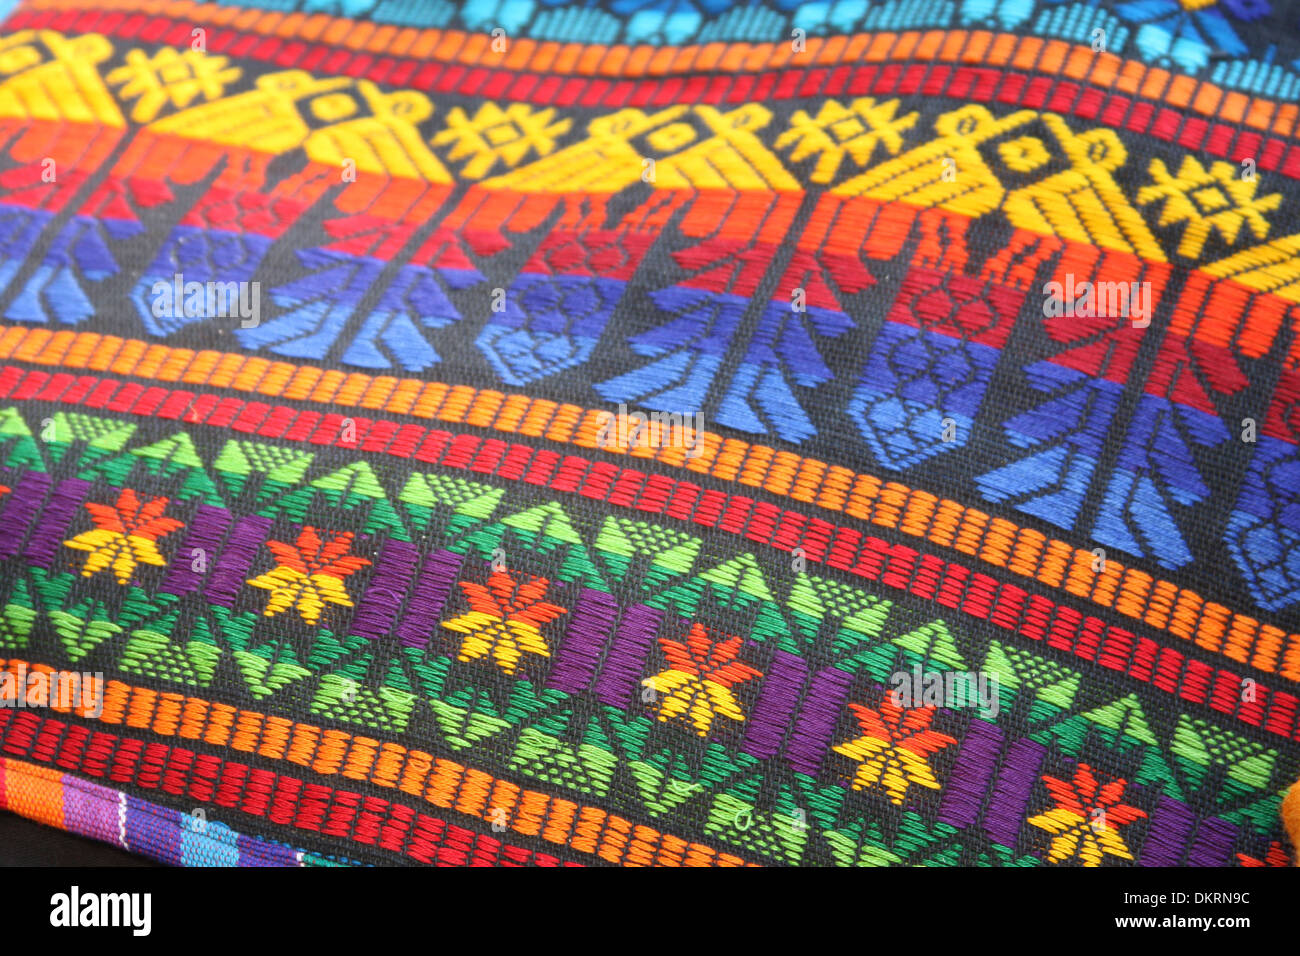 Südamerikanische handgemachte bunten Stoff mit traditionellen Mustern &  Design, Puerto Quetzal, Guatemala Stockfotografie - Alamy